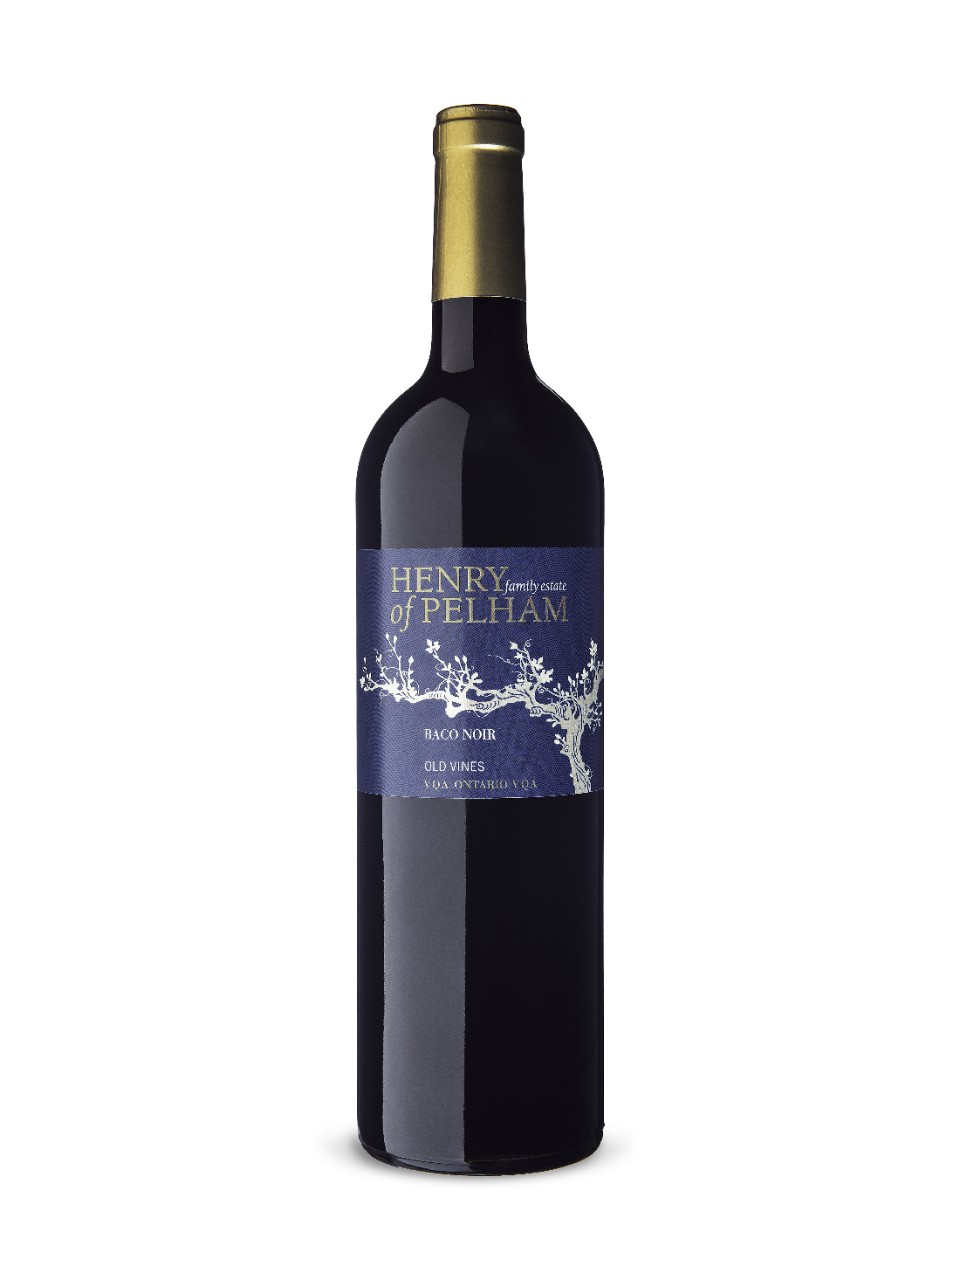 Henry of Pelham Baco Noir 2020- Old Vines